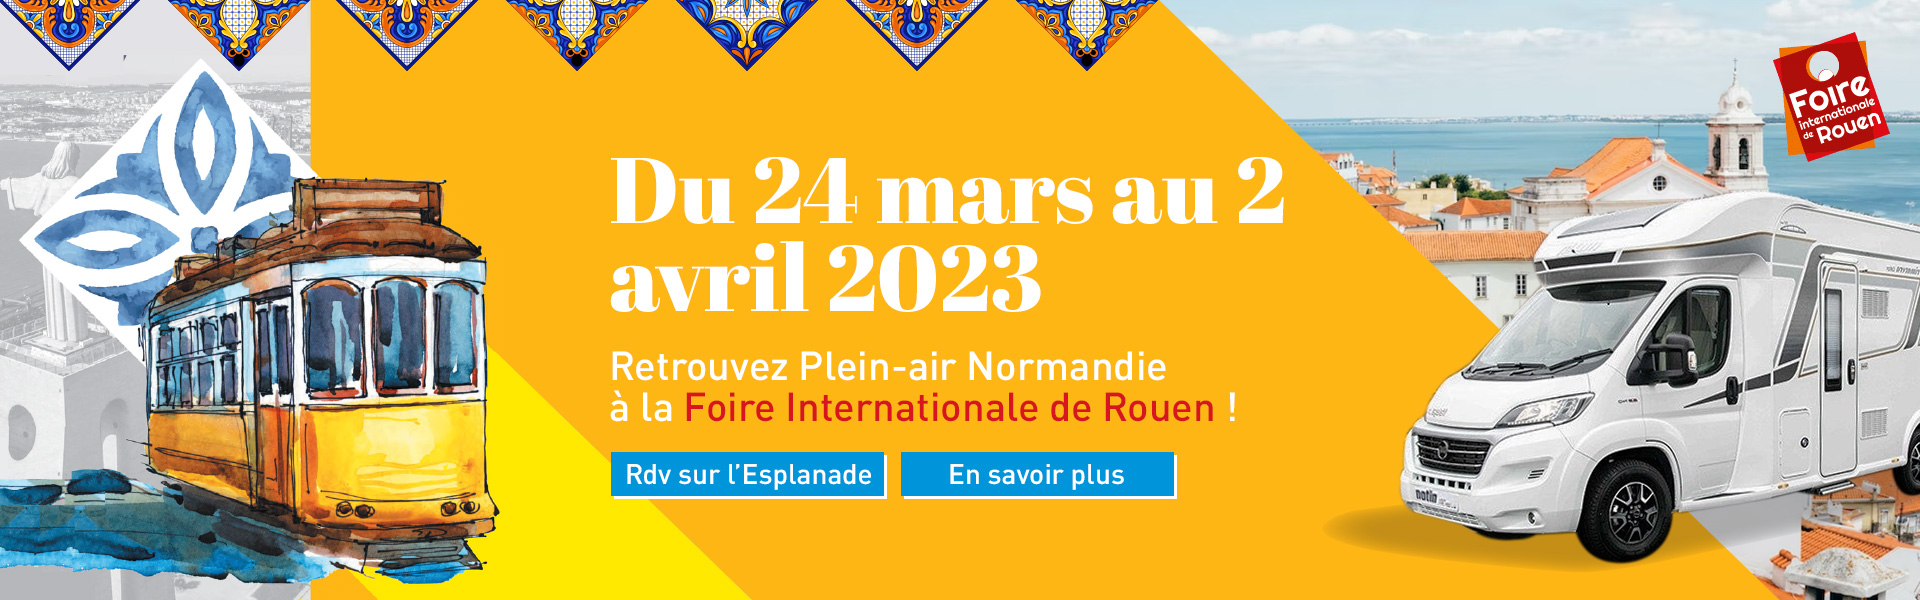 Foire Internationale de Rouen 2023